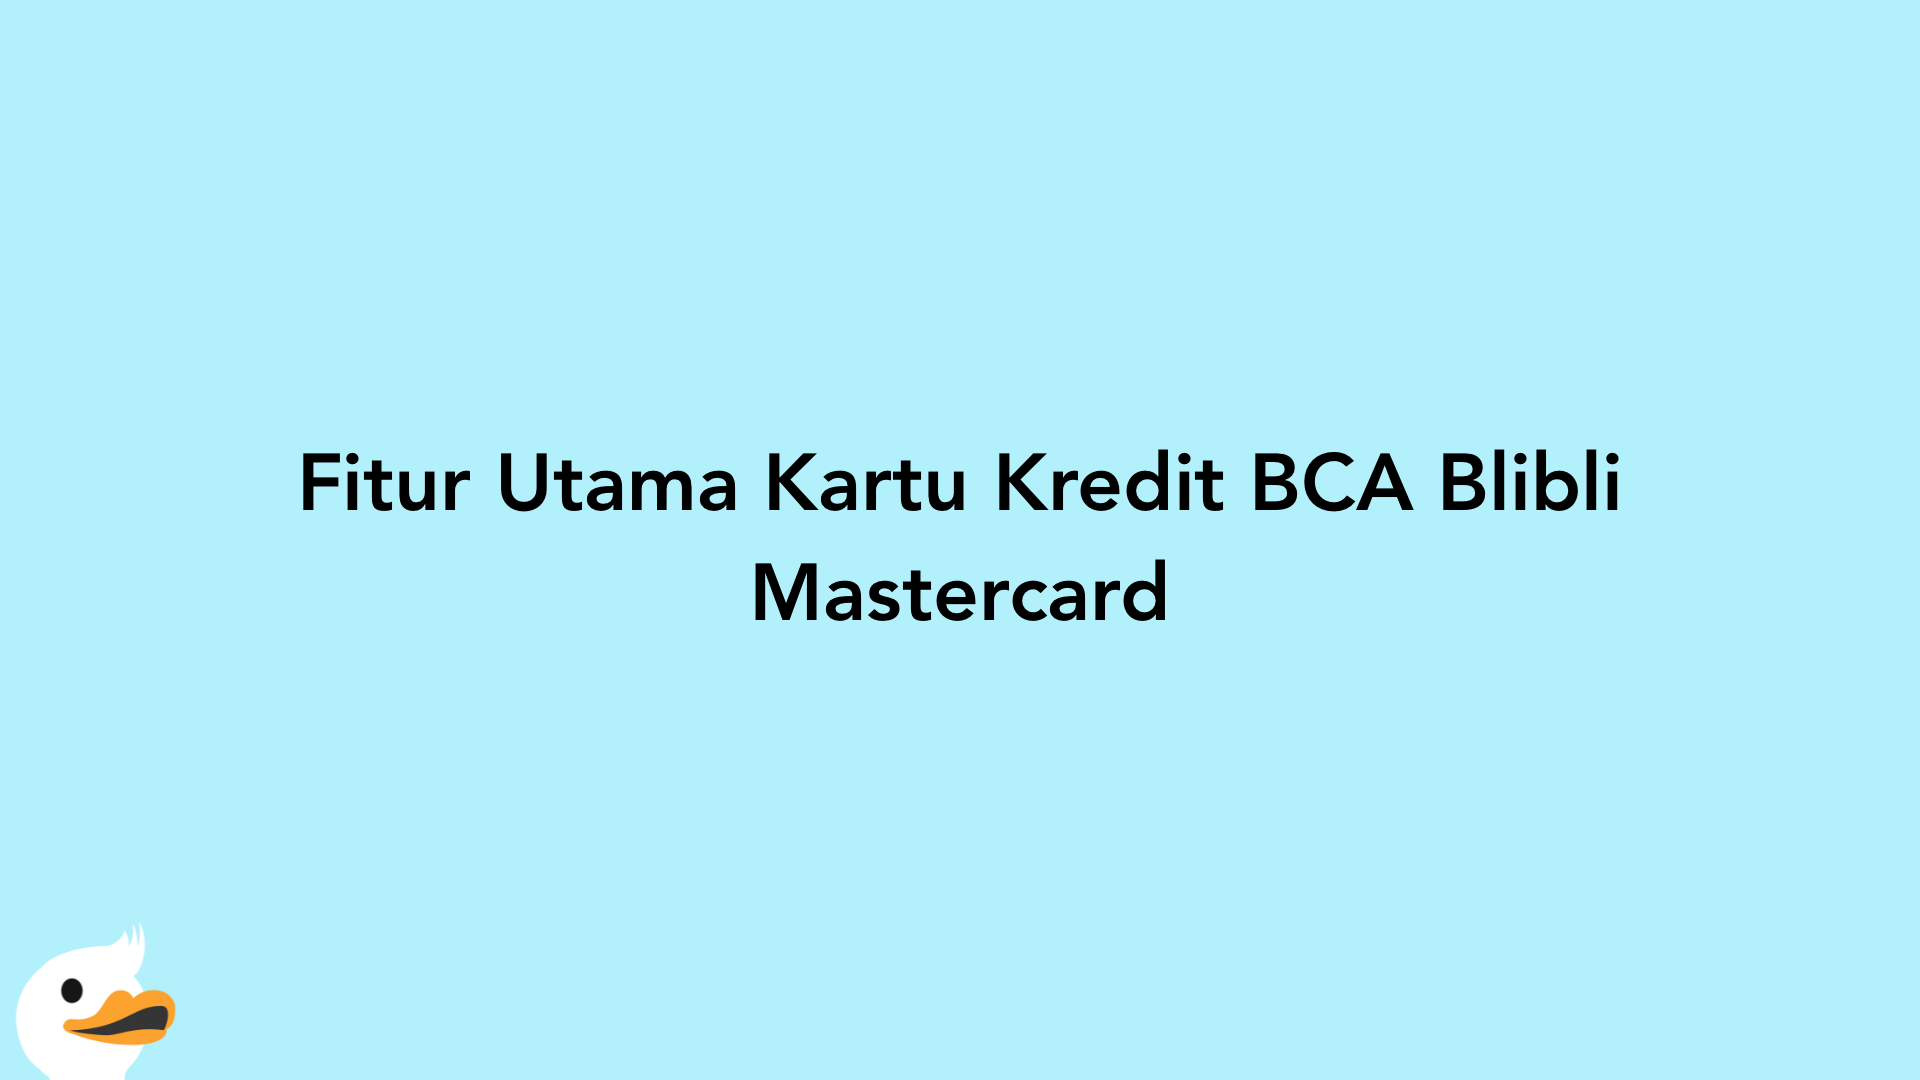 Fitur Utama Kartu Kredit BCA Blibli Mastercard